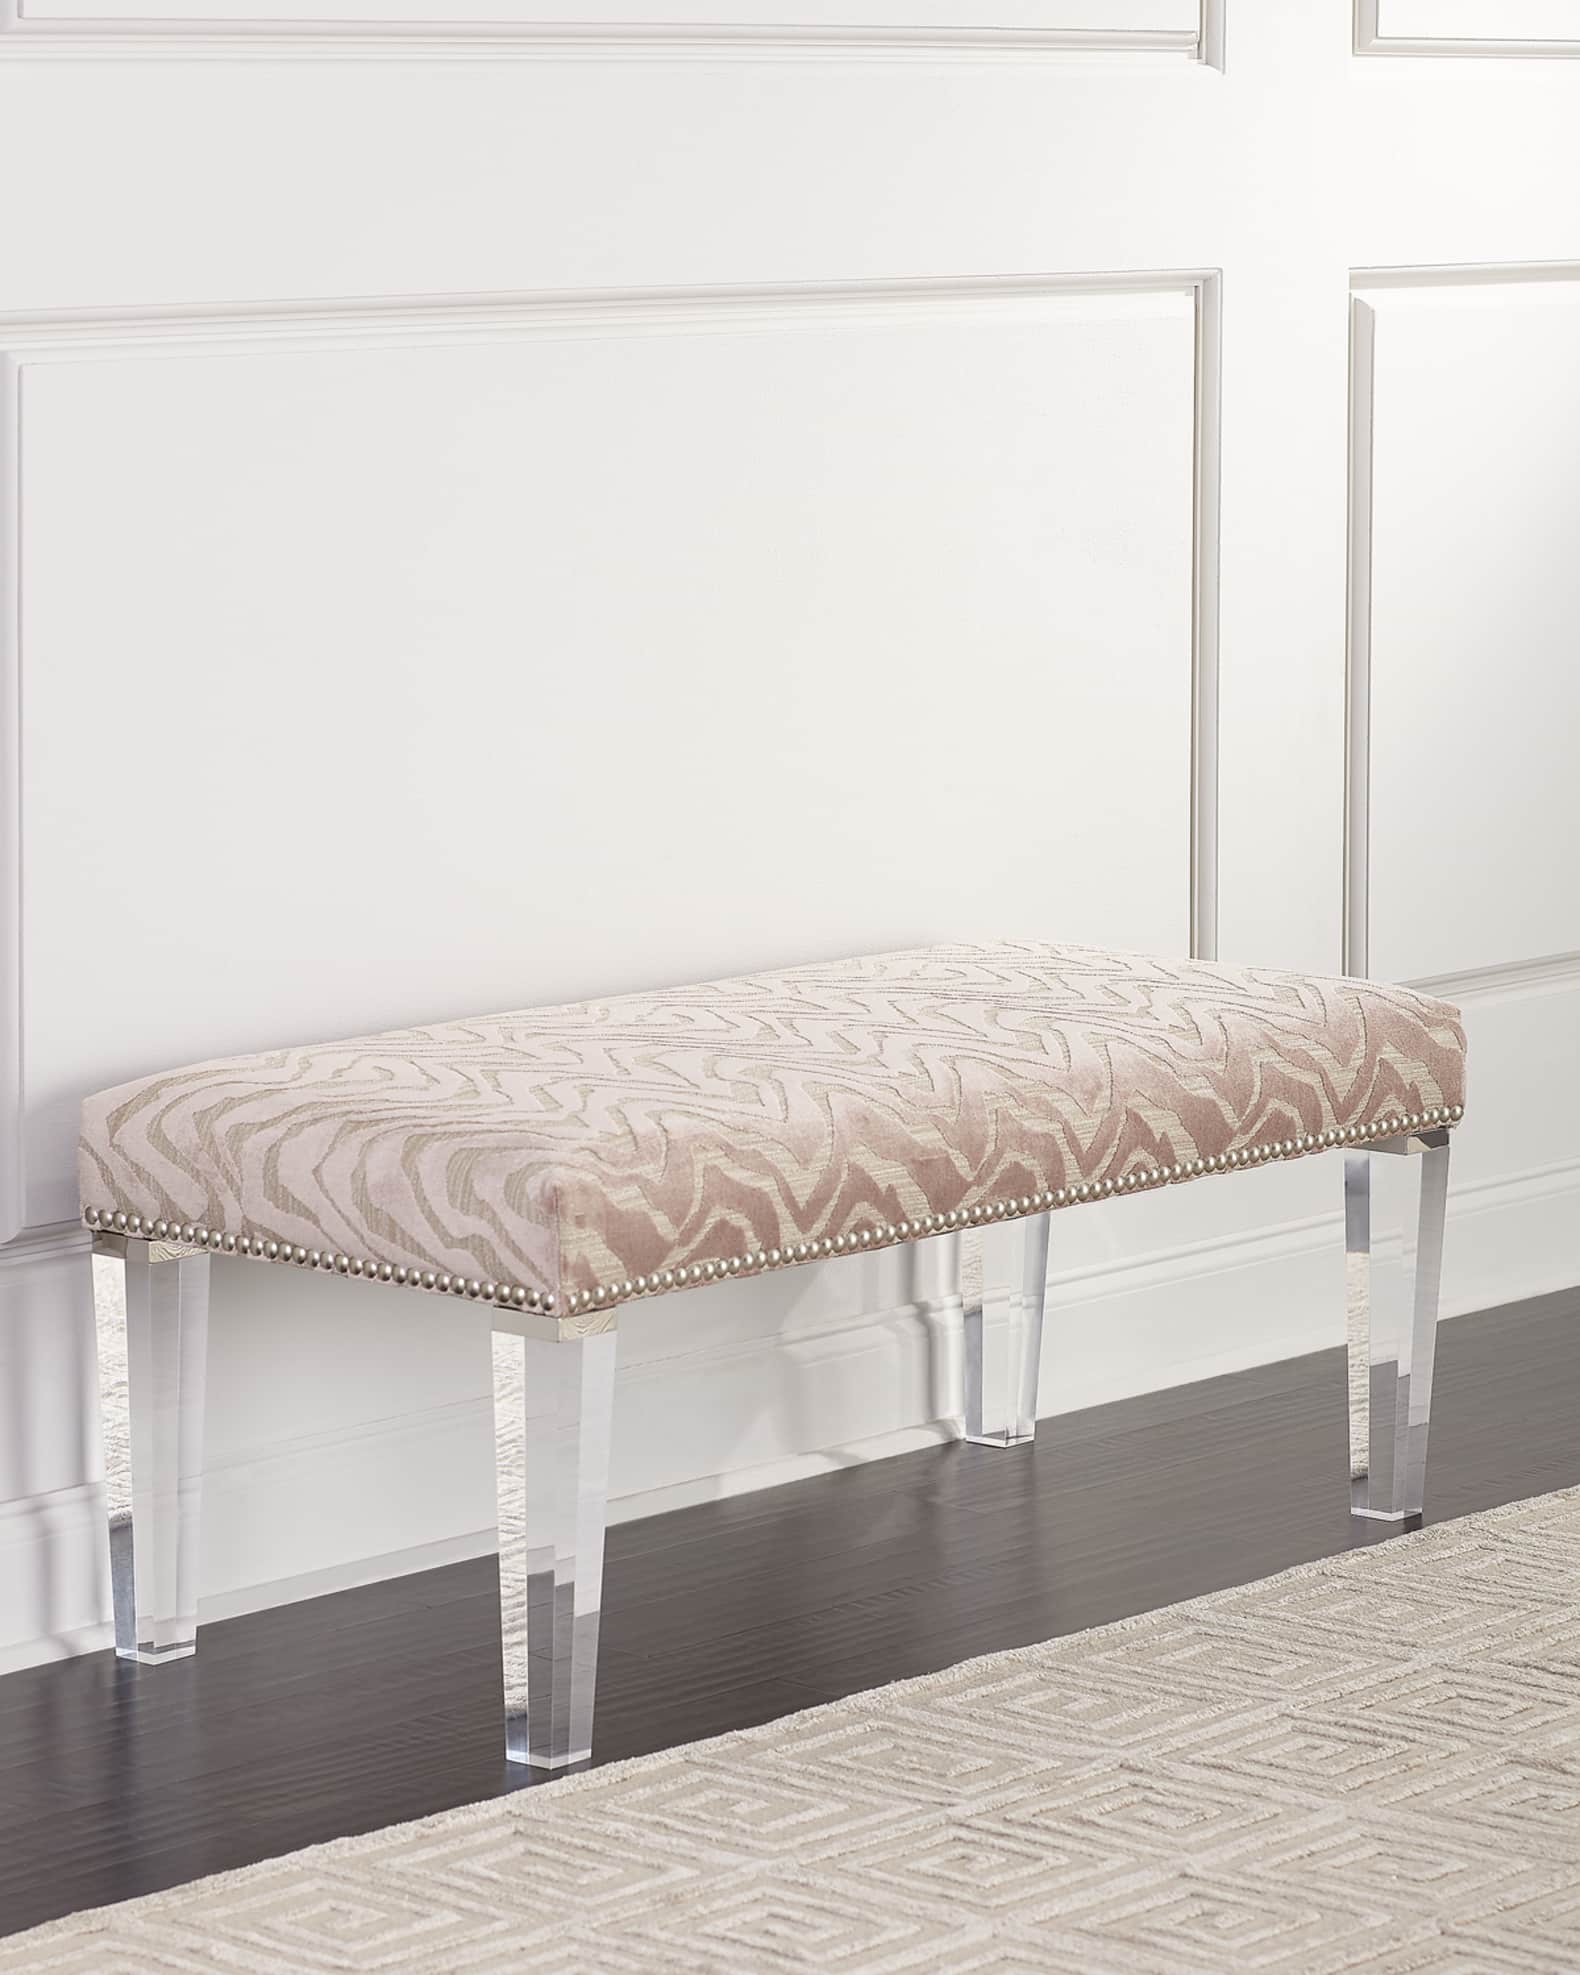 Massoud Pantone Bench with Acrylic Legs